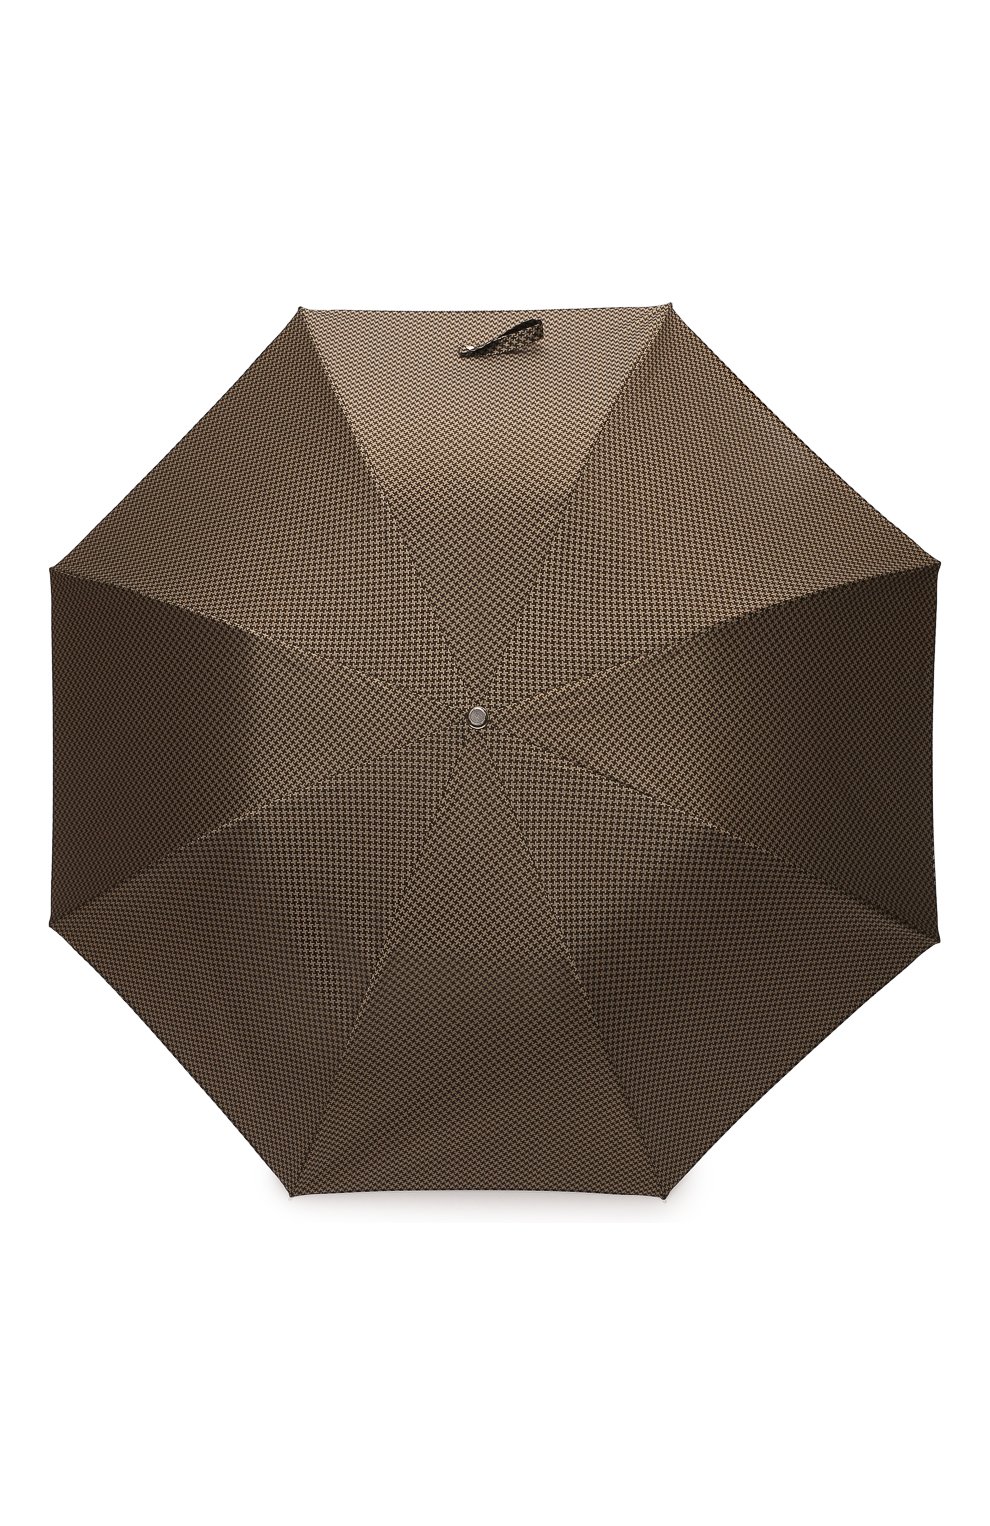 Мужской складной зонт PASOTTI OMBRELLI коричневого цвета, арт. 64S/53682/4/PELLLE | Фото 1 (Материал: Текстиль, Синтетический материал, Металл)